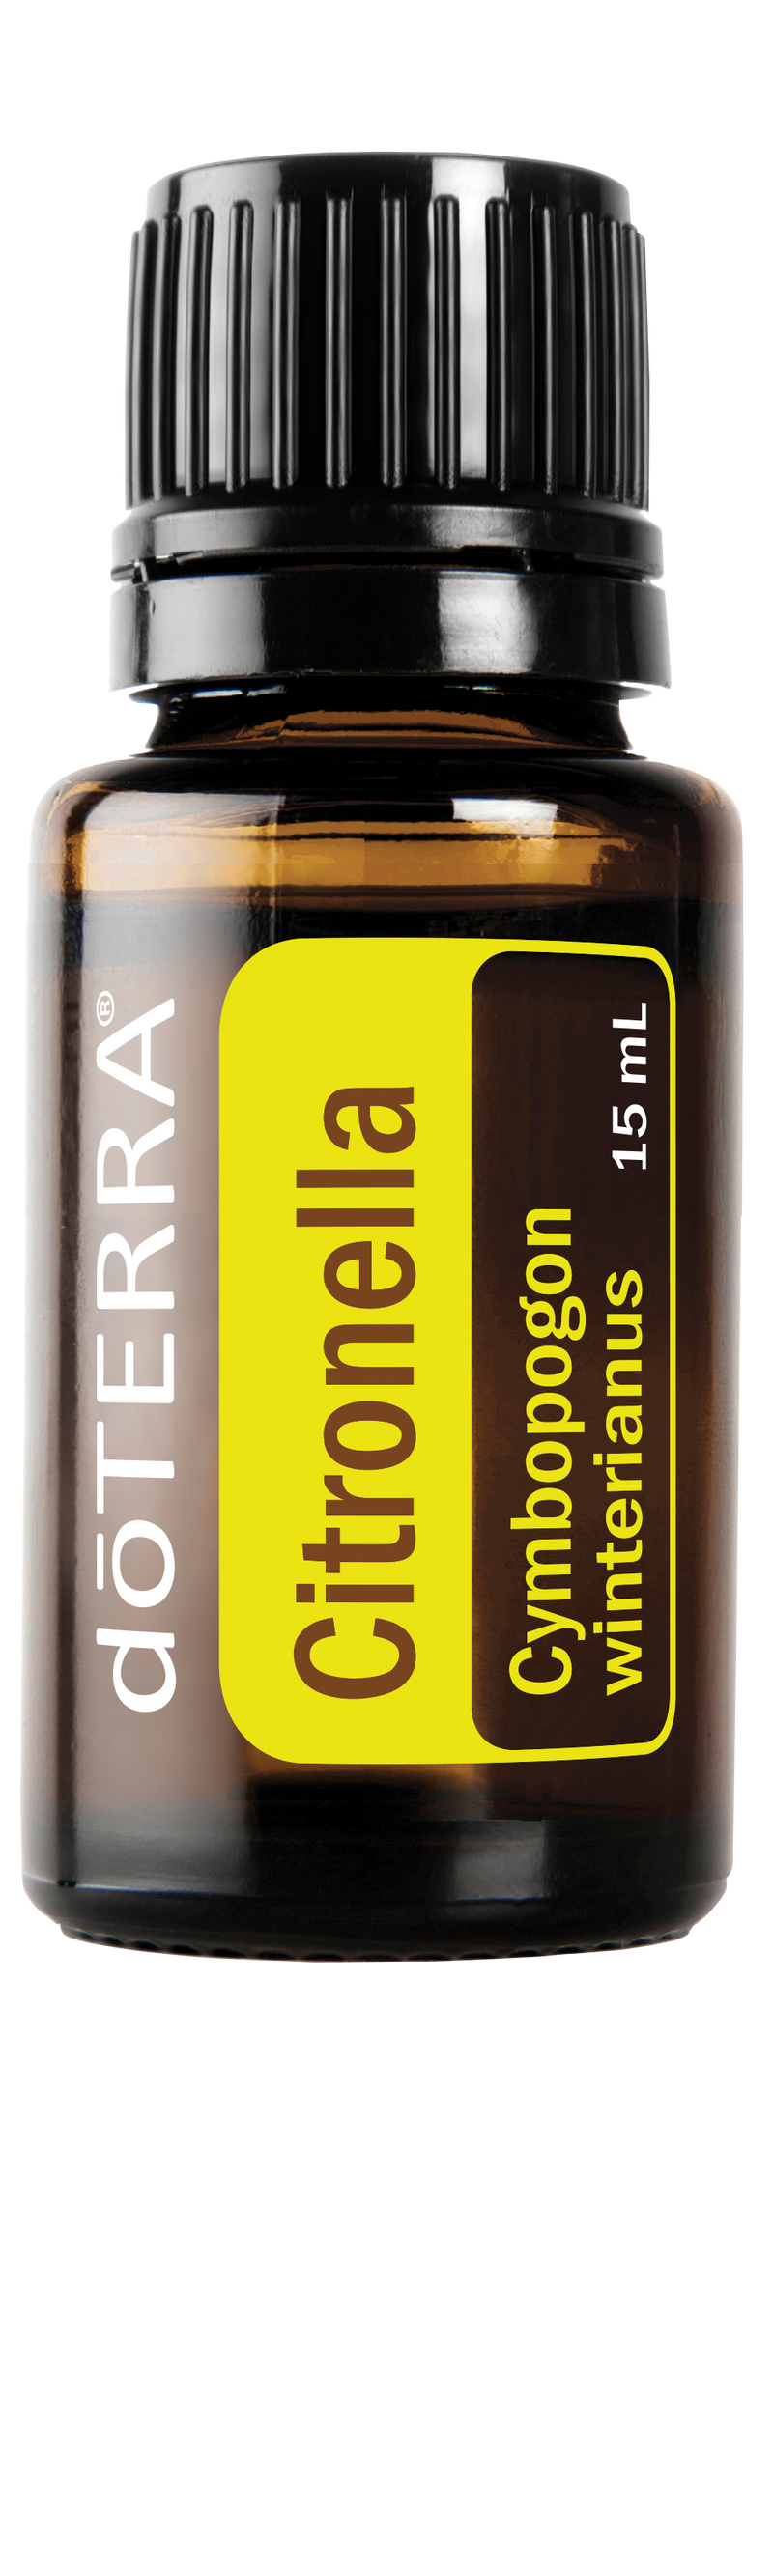 CITRONELLA OIL - dōTERRA Essential Oils